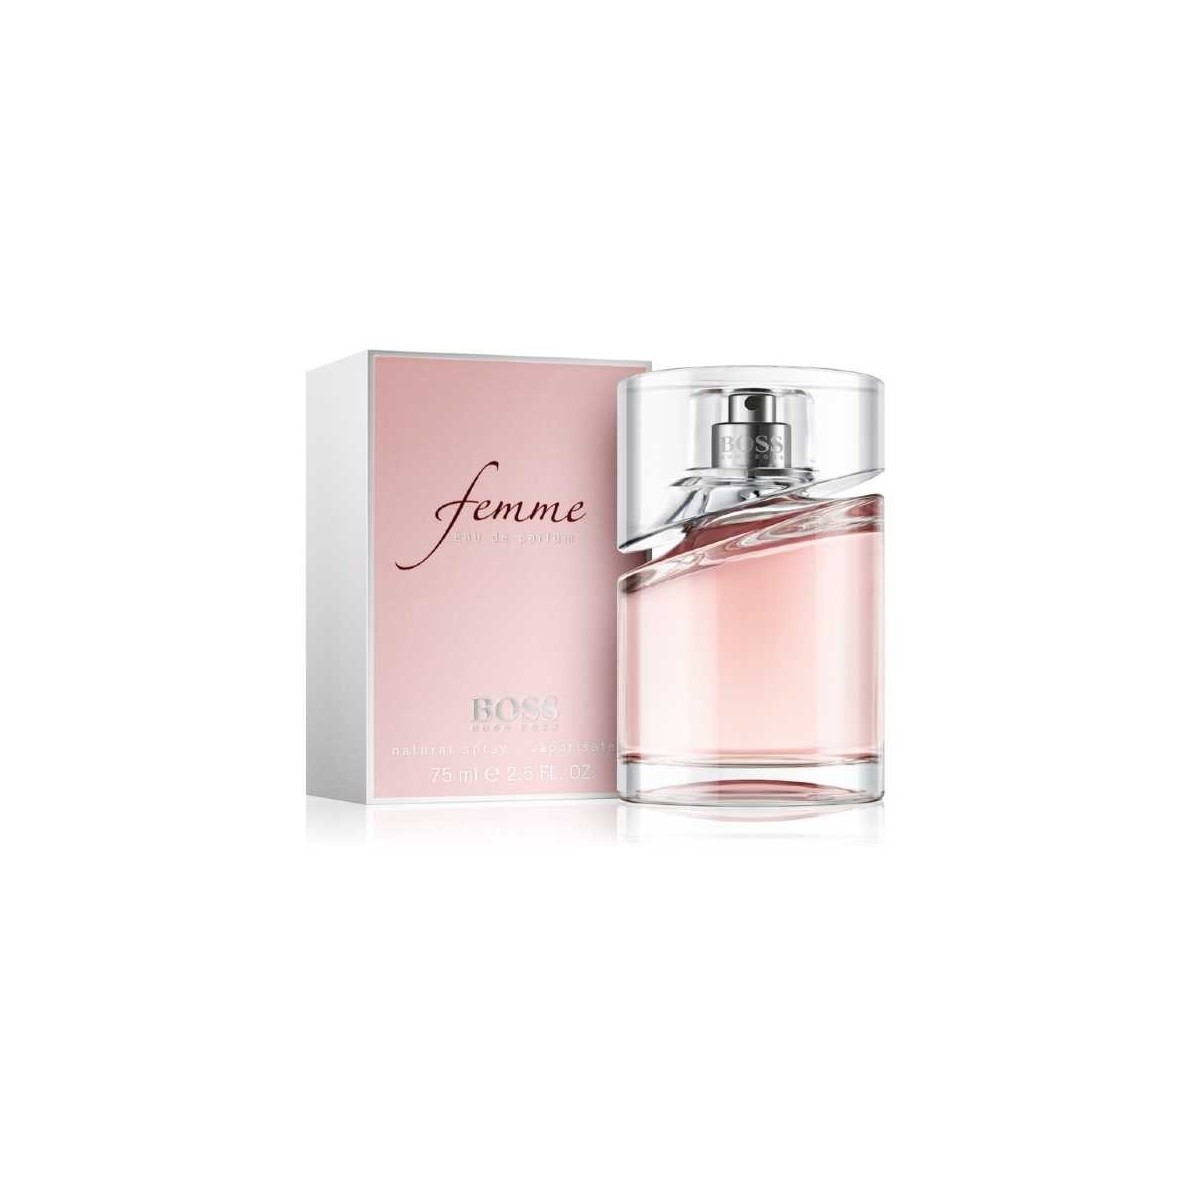 Hugo Boss Femme Eau de Parfum 75ml spray